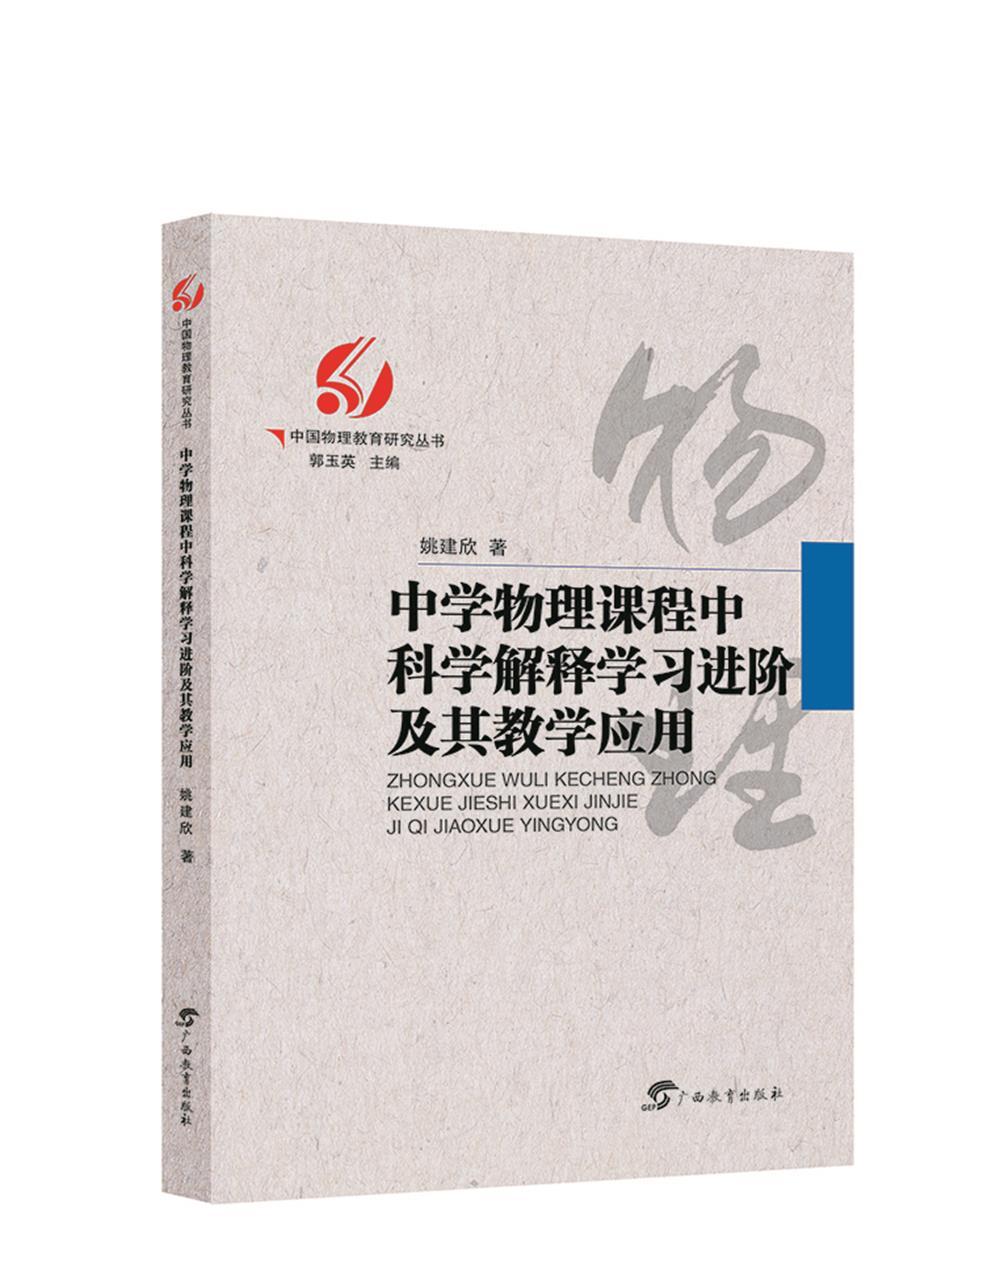 中国物理教育研究丛书中学物理课程中科学解释学习及其教学应用